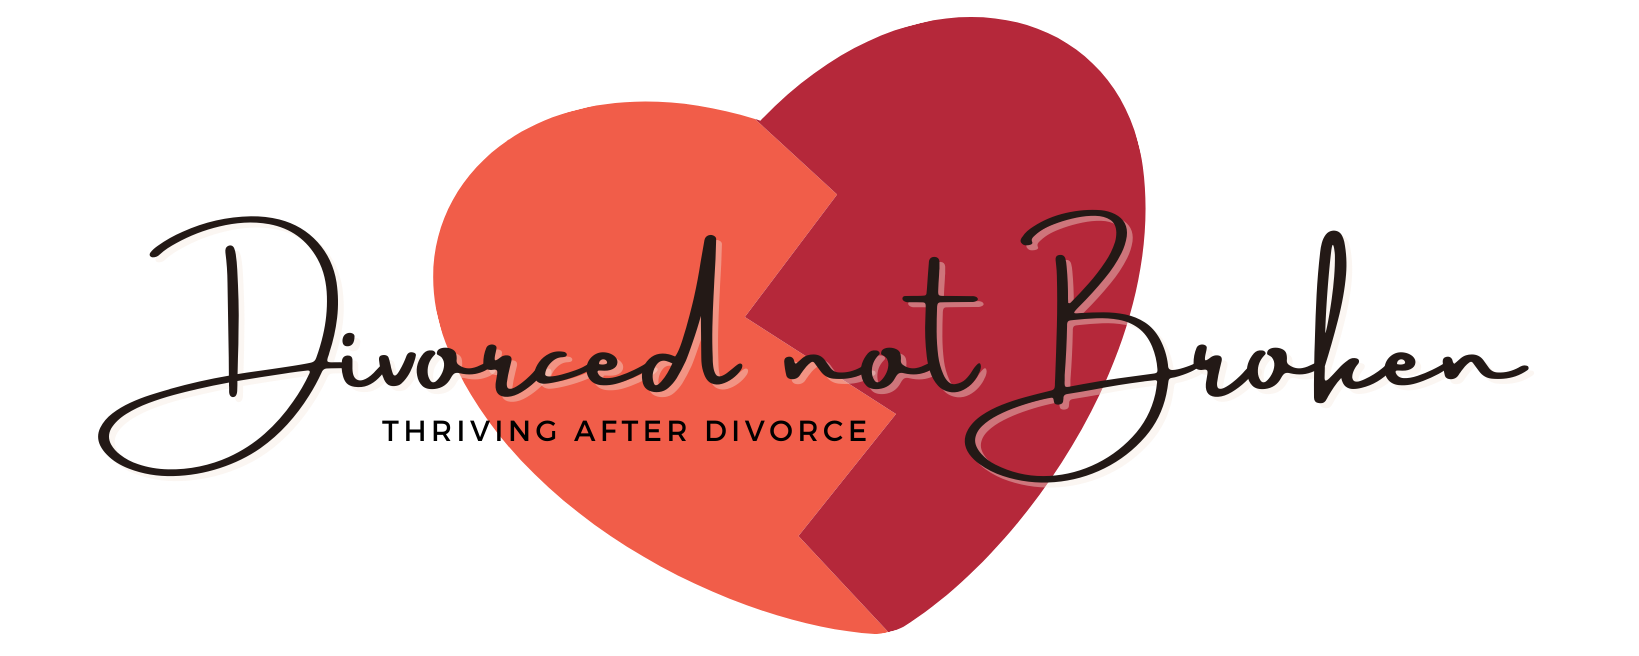 Divorced Not Broken